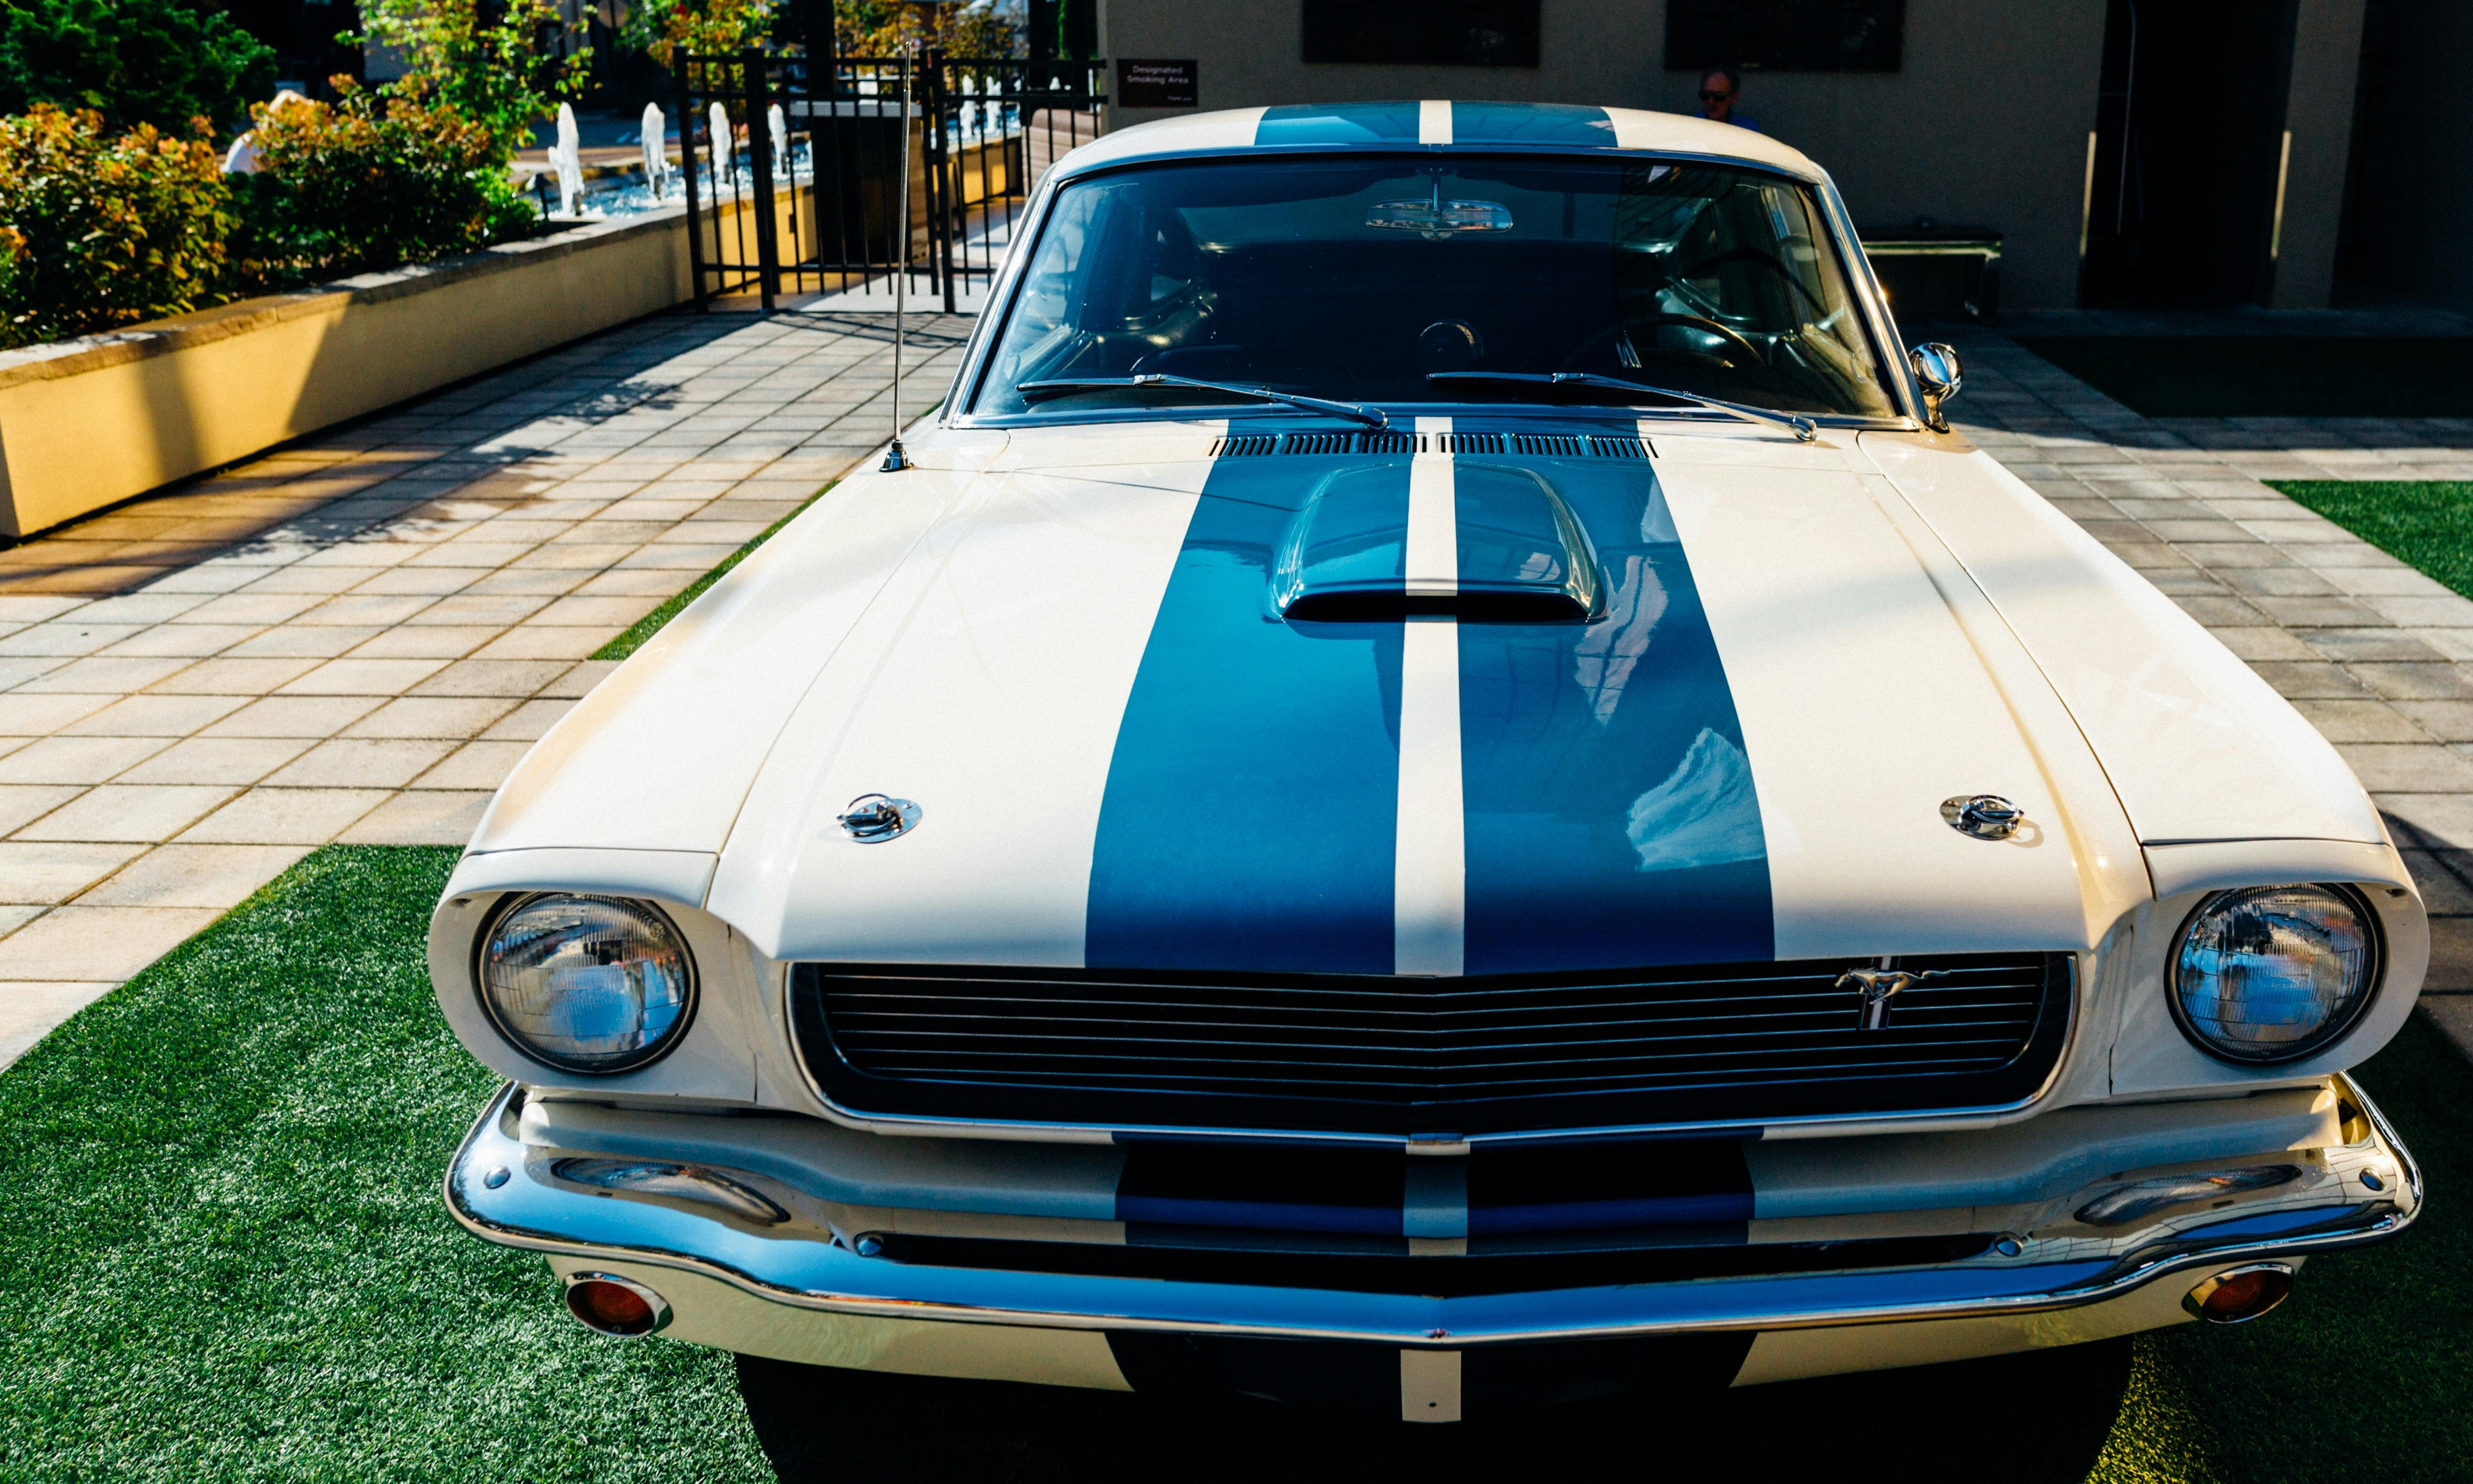 La Mustang restaurée symbolisant le travail acharné et la connexion renouvelée | Source : Pexels